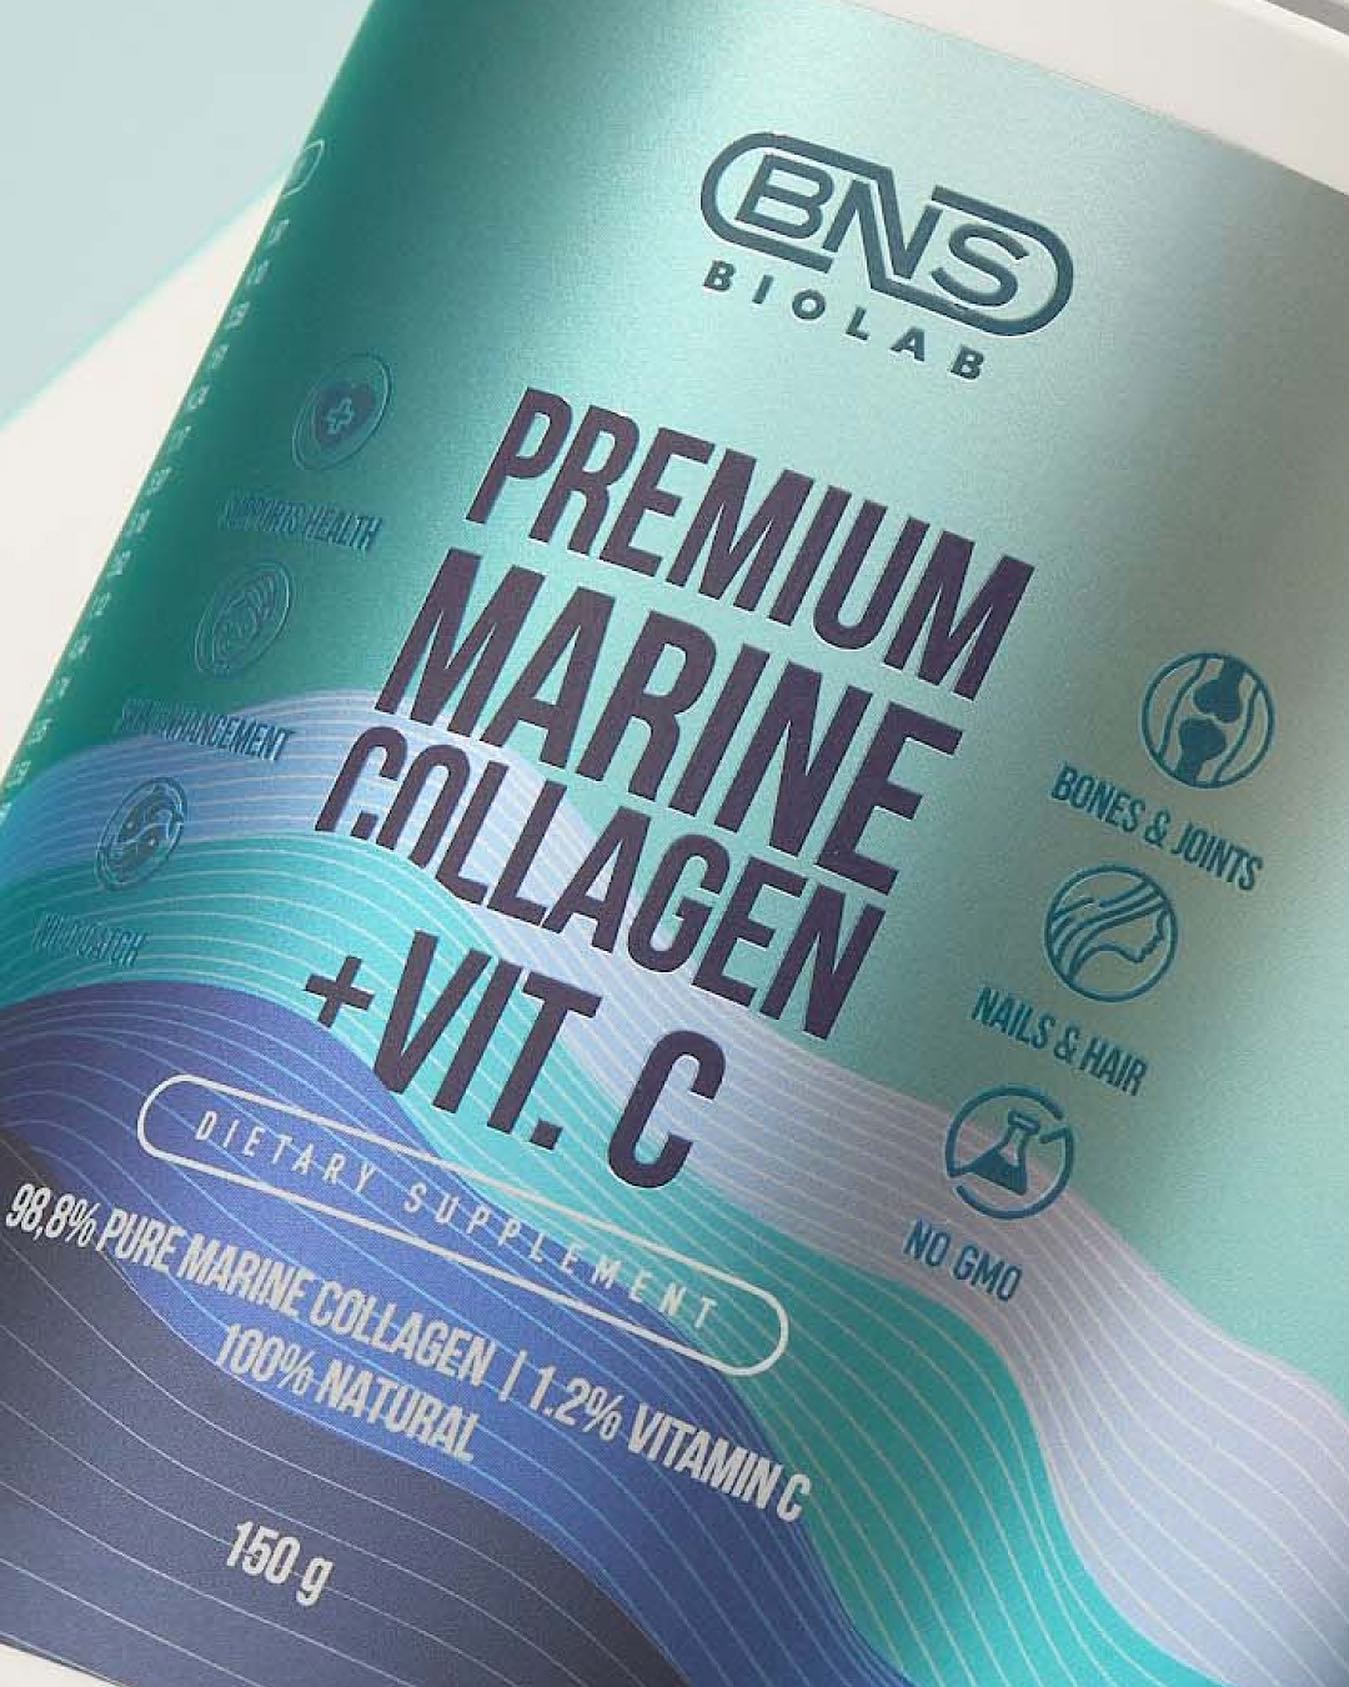 BNS BIOLAB Premium Marine Collagen +VIT.C 80340010 - фото 3